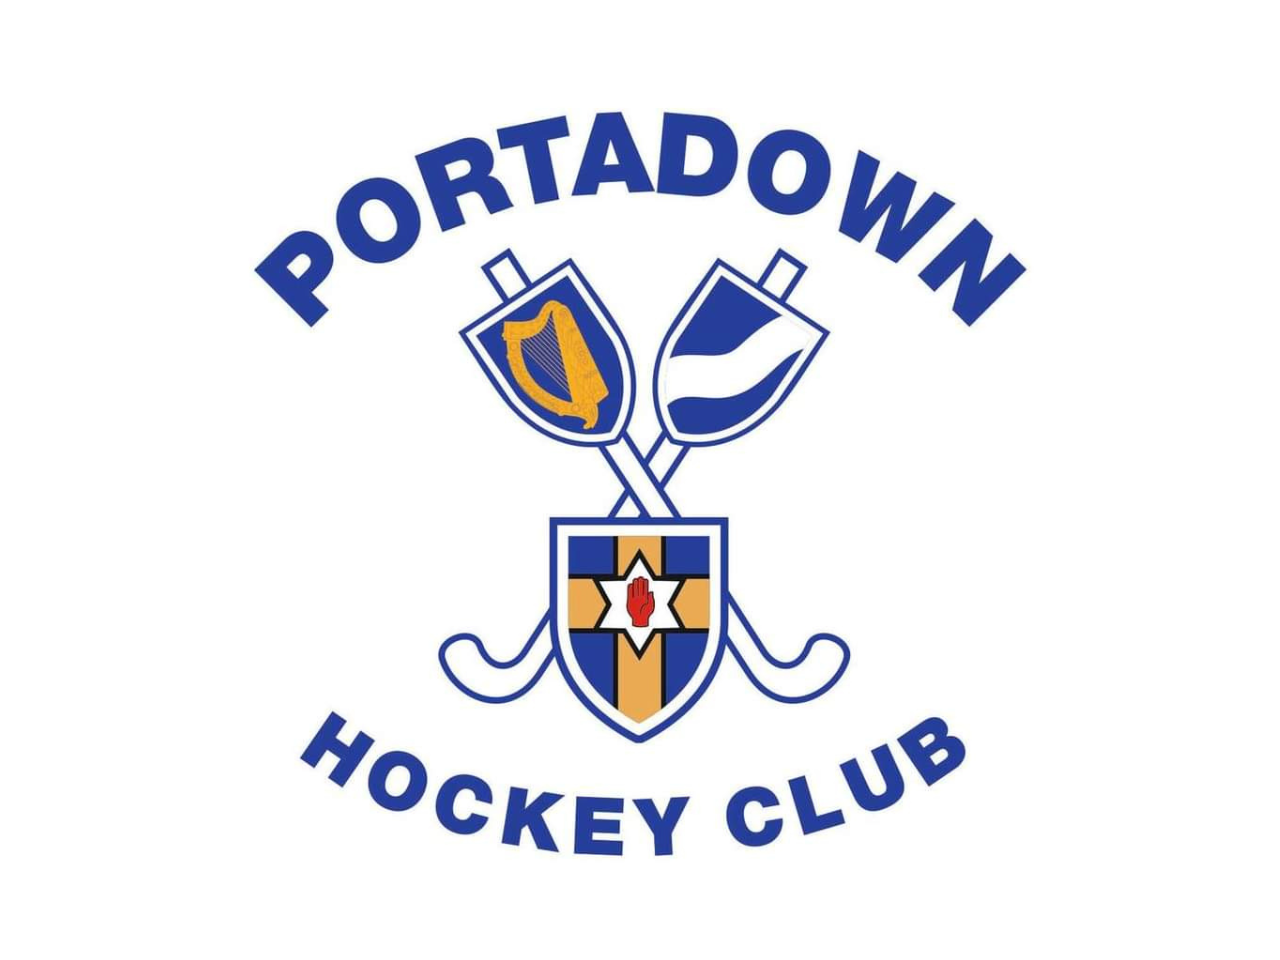 Portadown Ladies Hockey Club Sponsorship